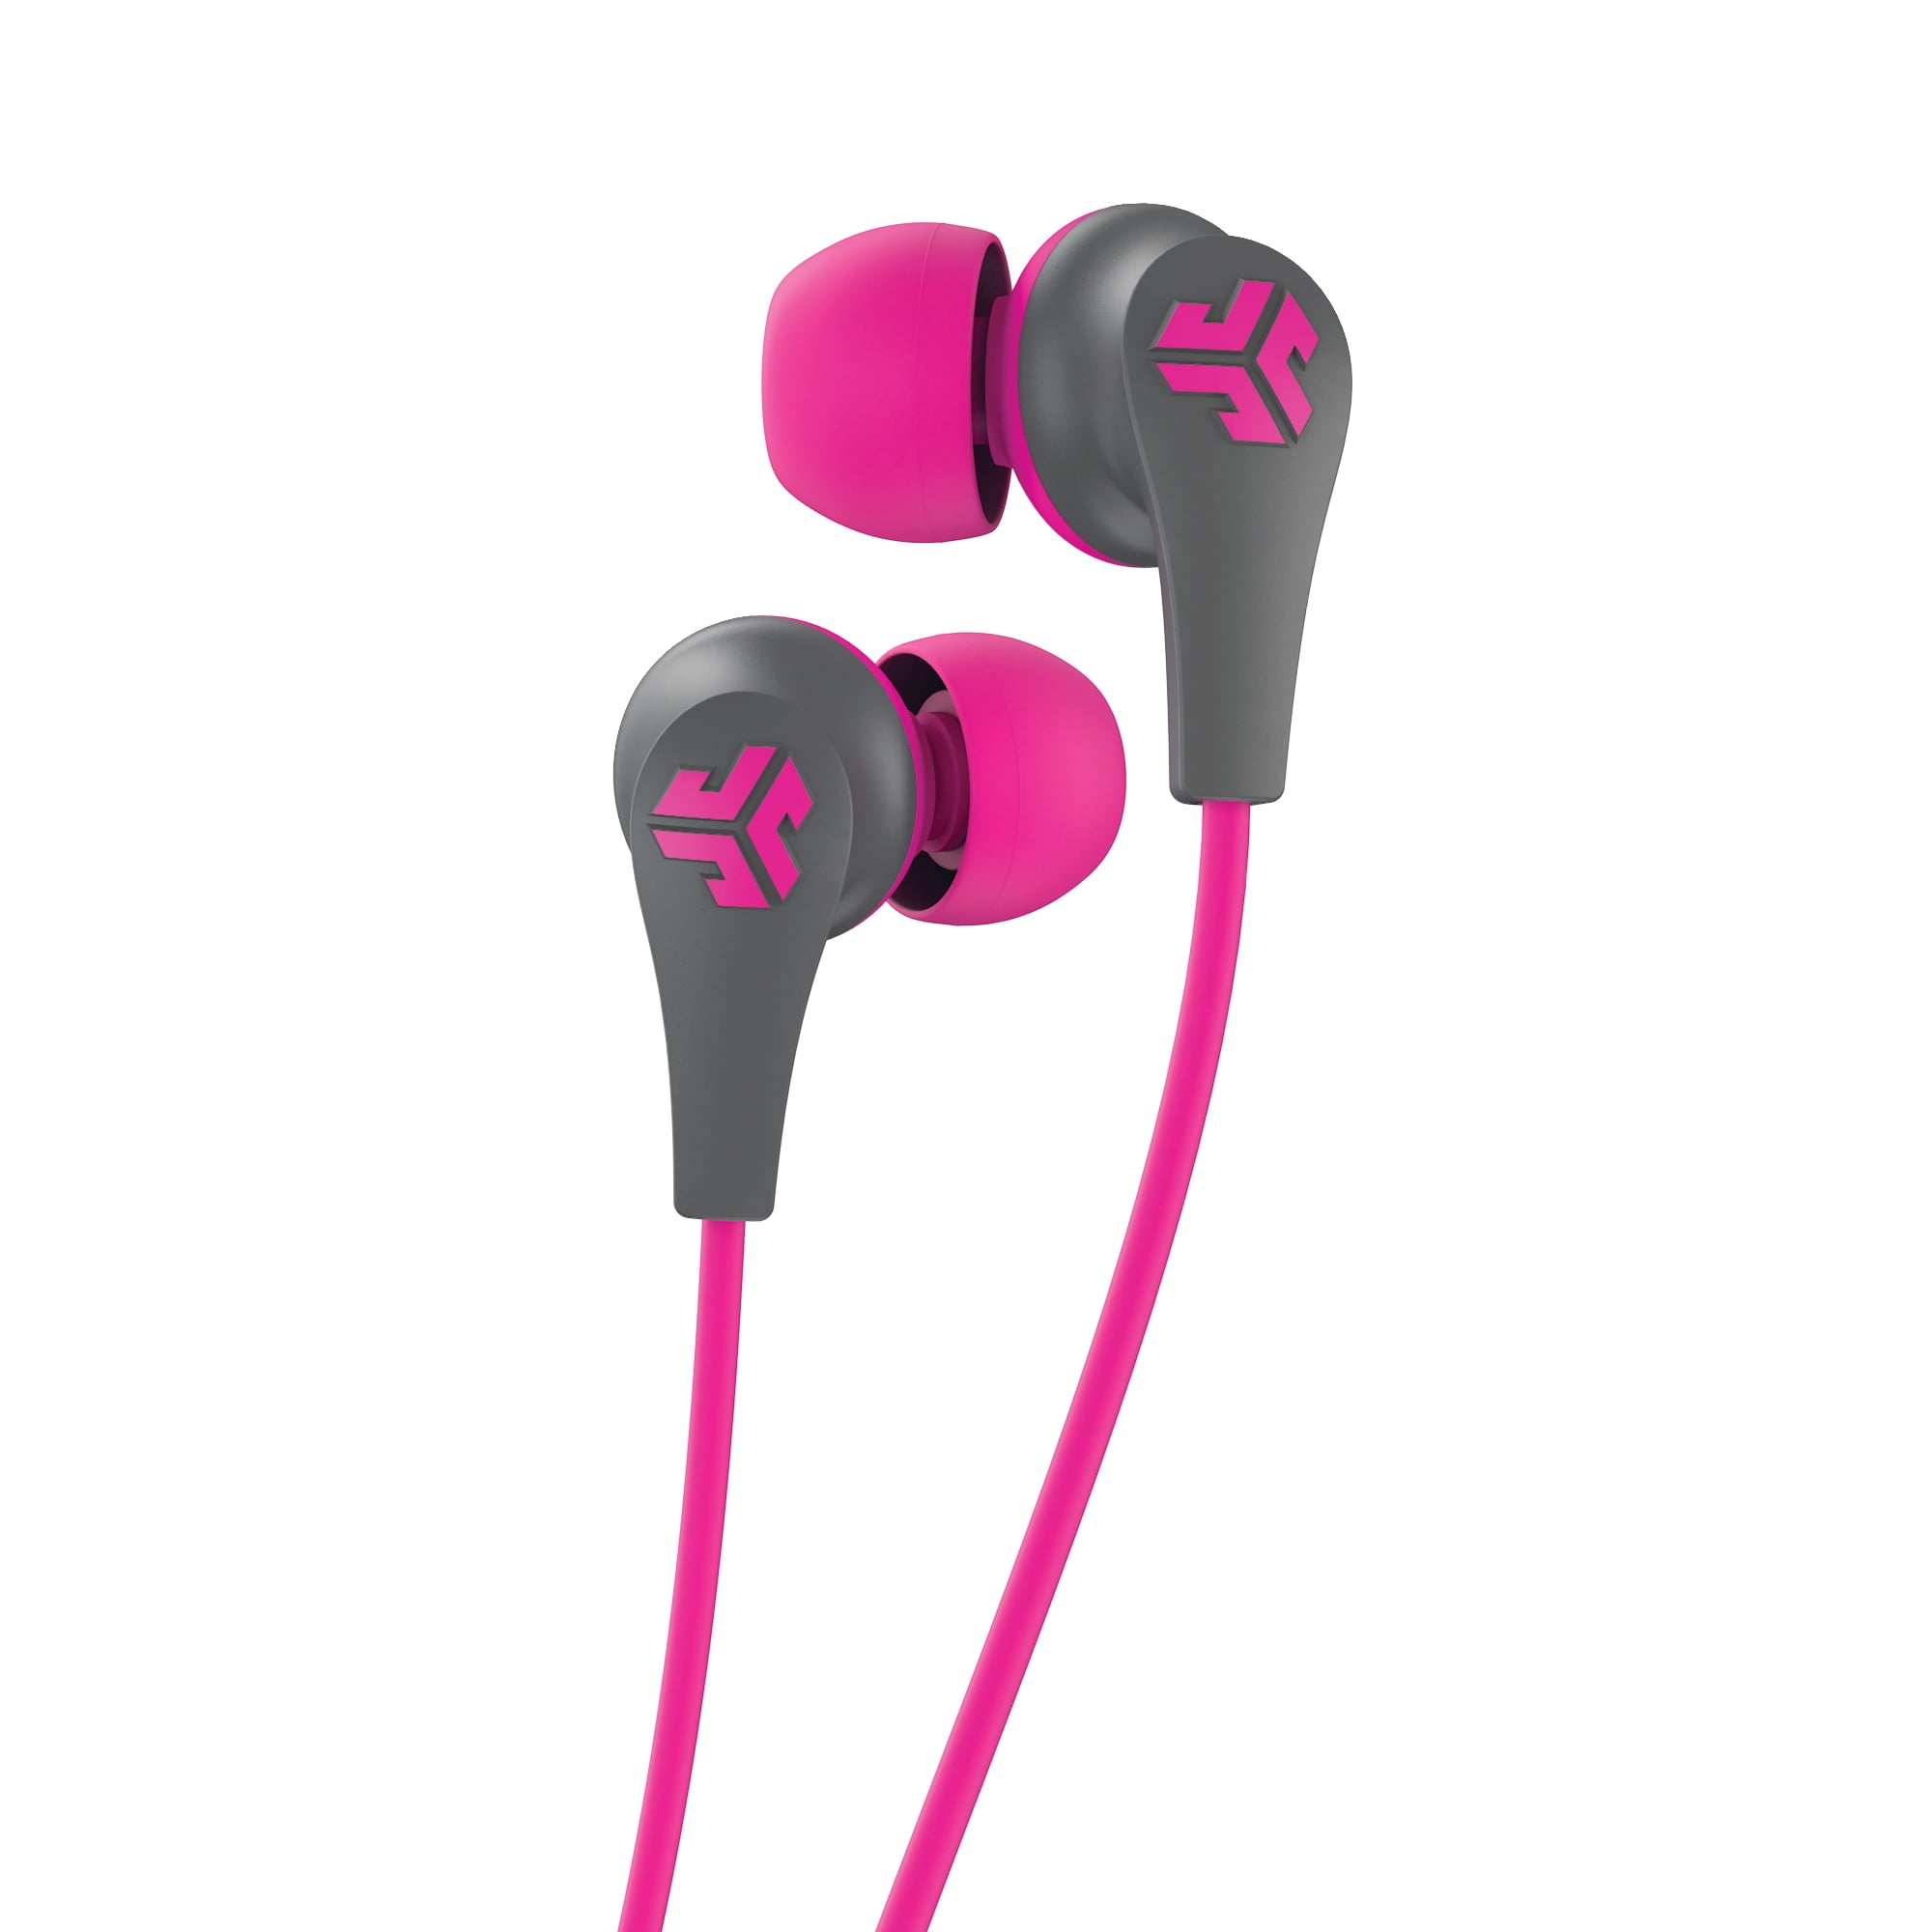 JLab Audio JBuds Pro Bluetooth Earbuds Pink / Gray - Walmart.com